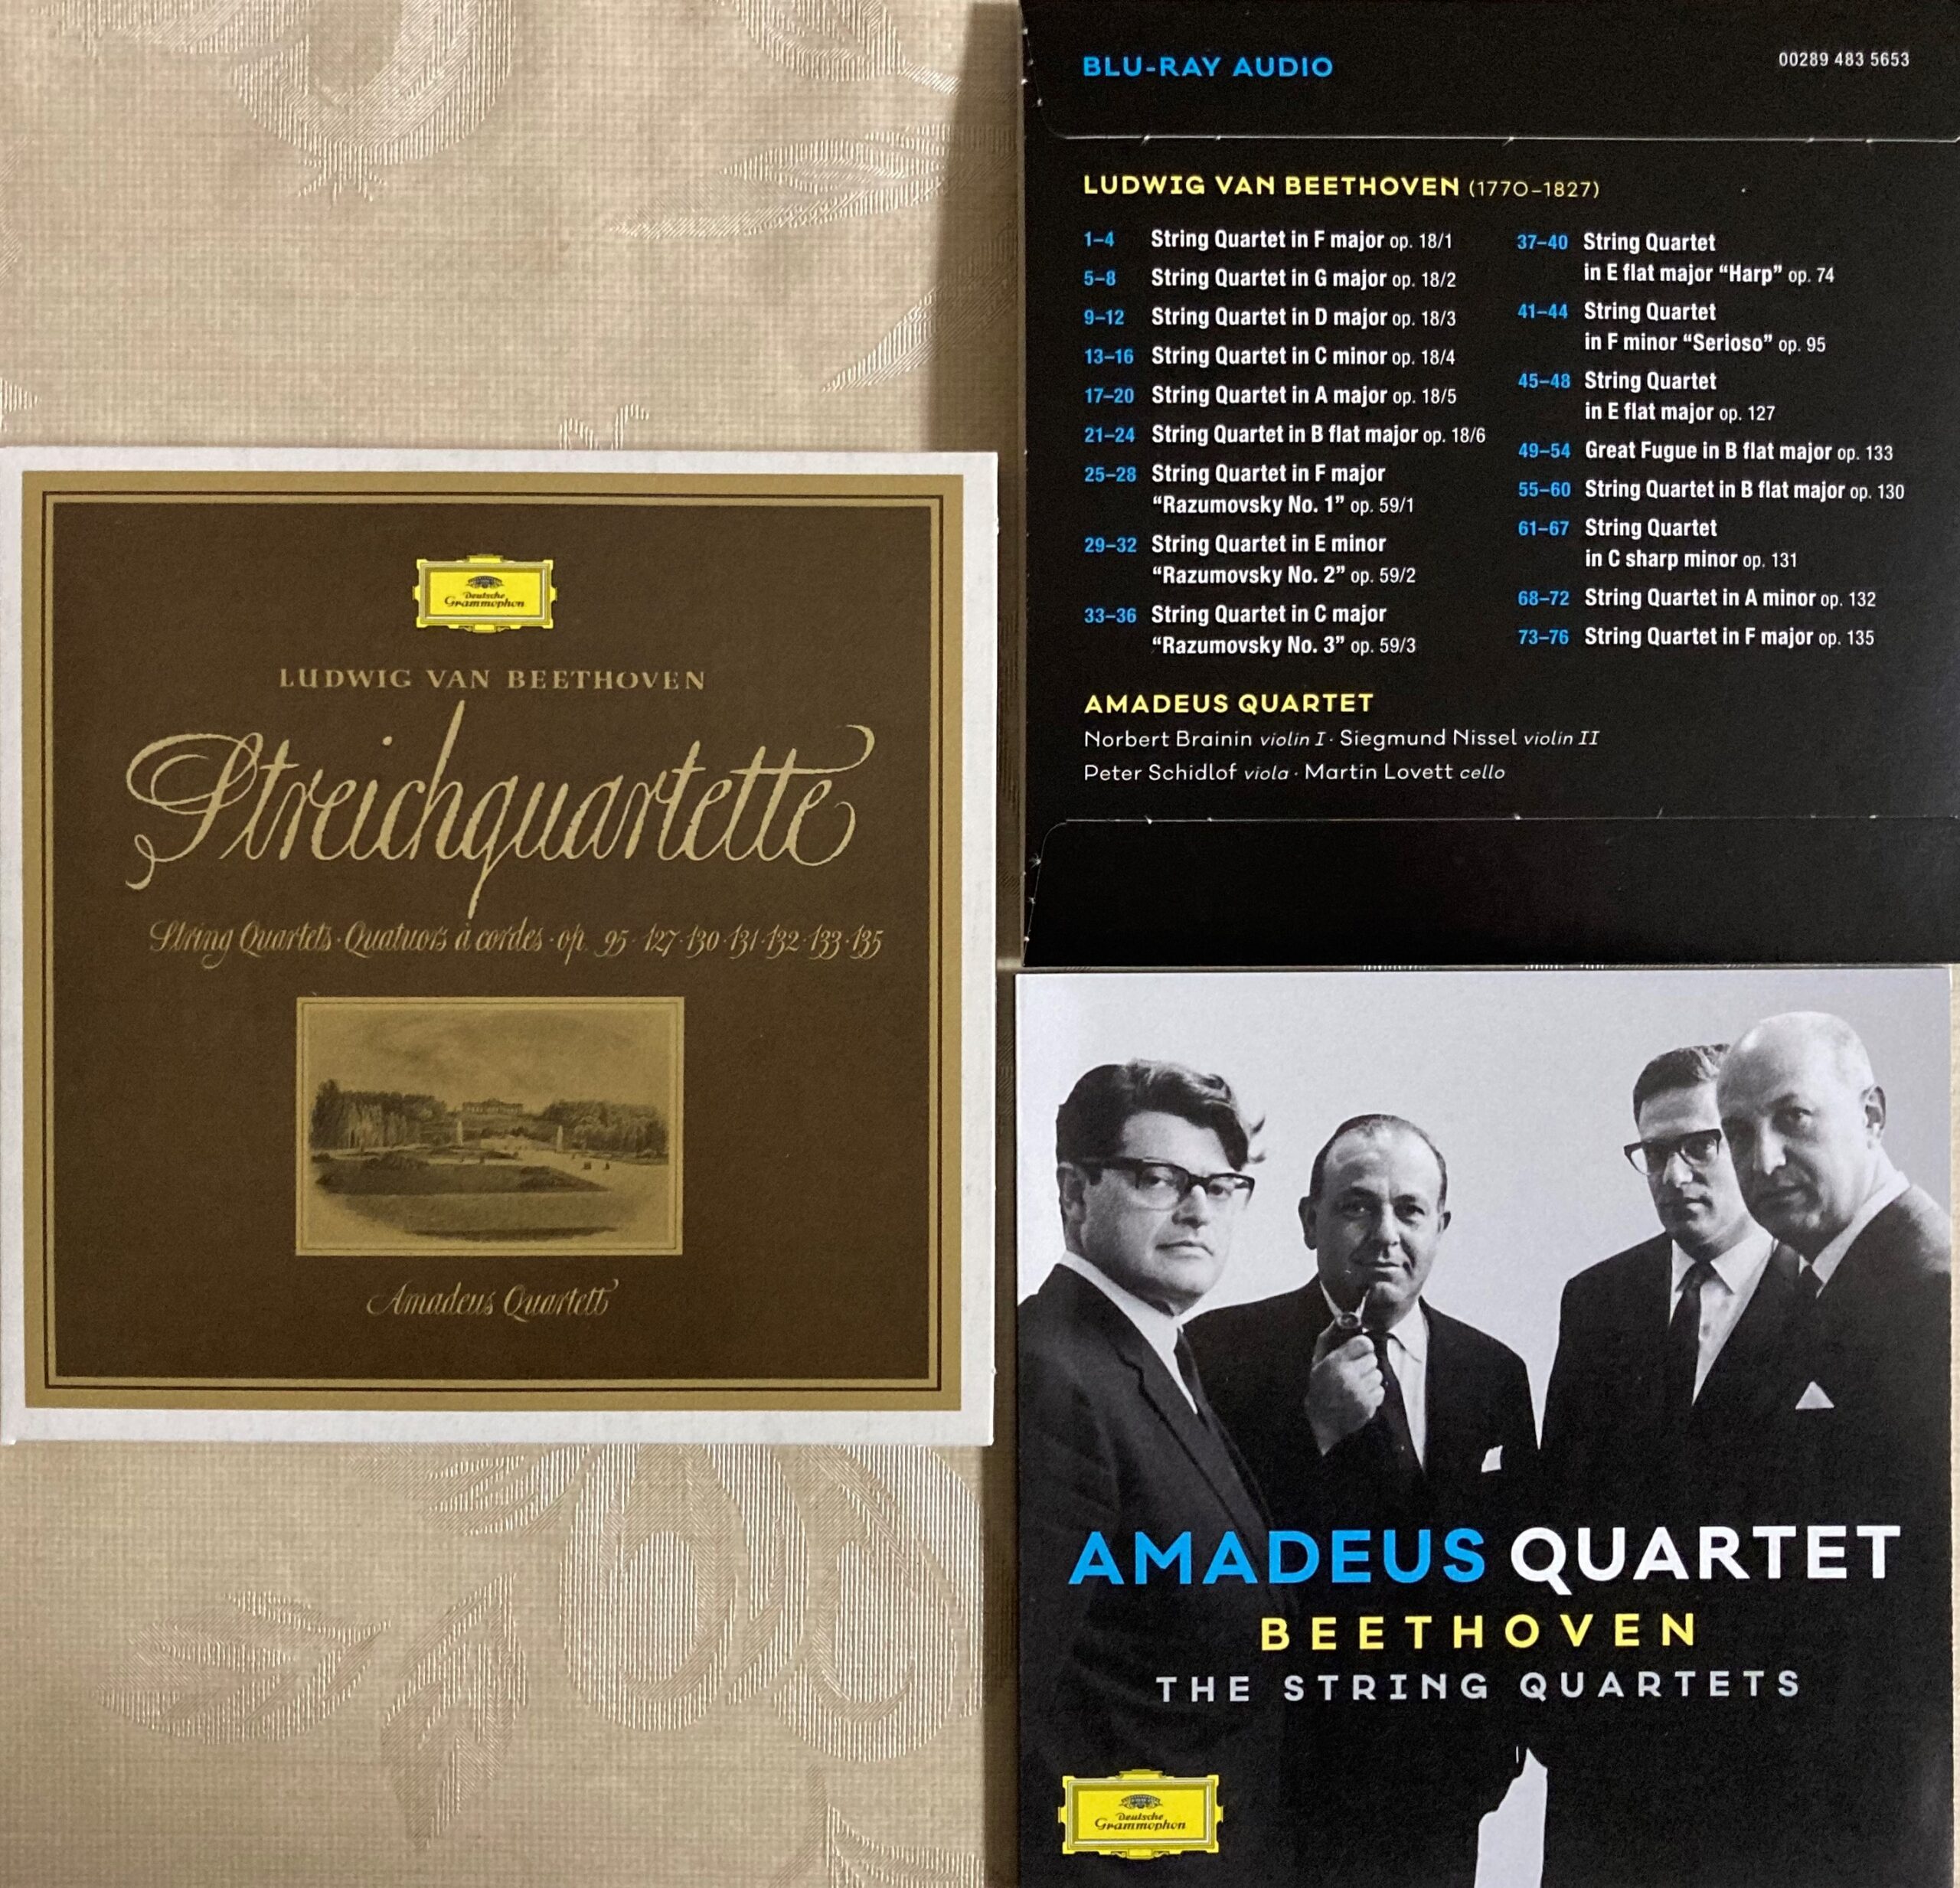 アマデウス弦楽四重奏団のベートーヴェンの弦楽四重奏曲全集の後期のジャケット写真など